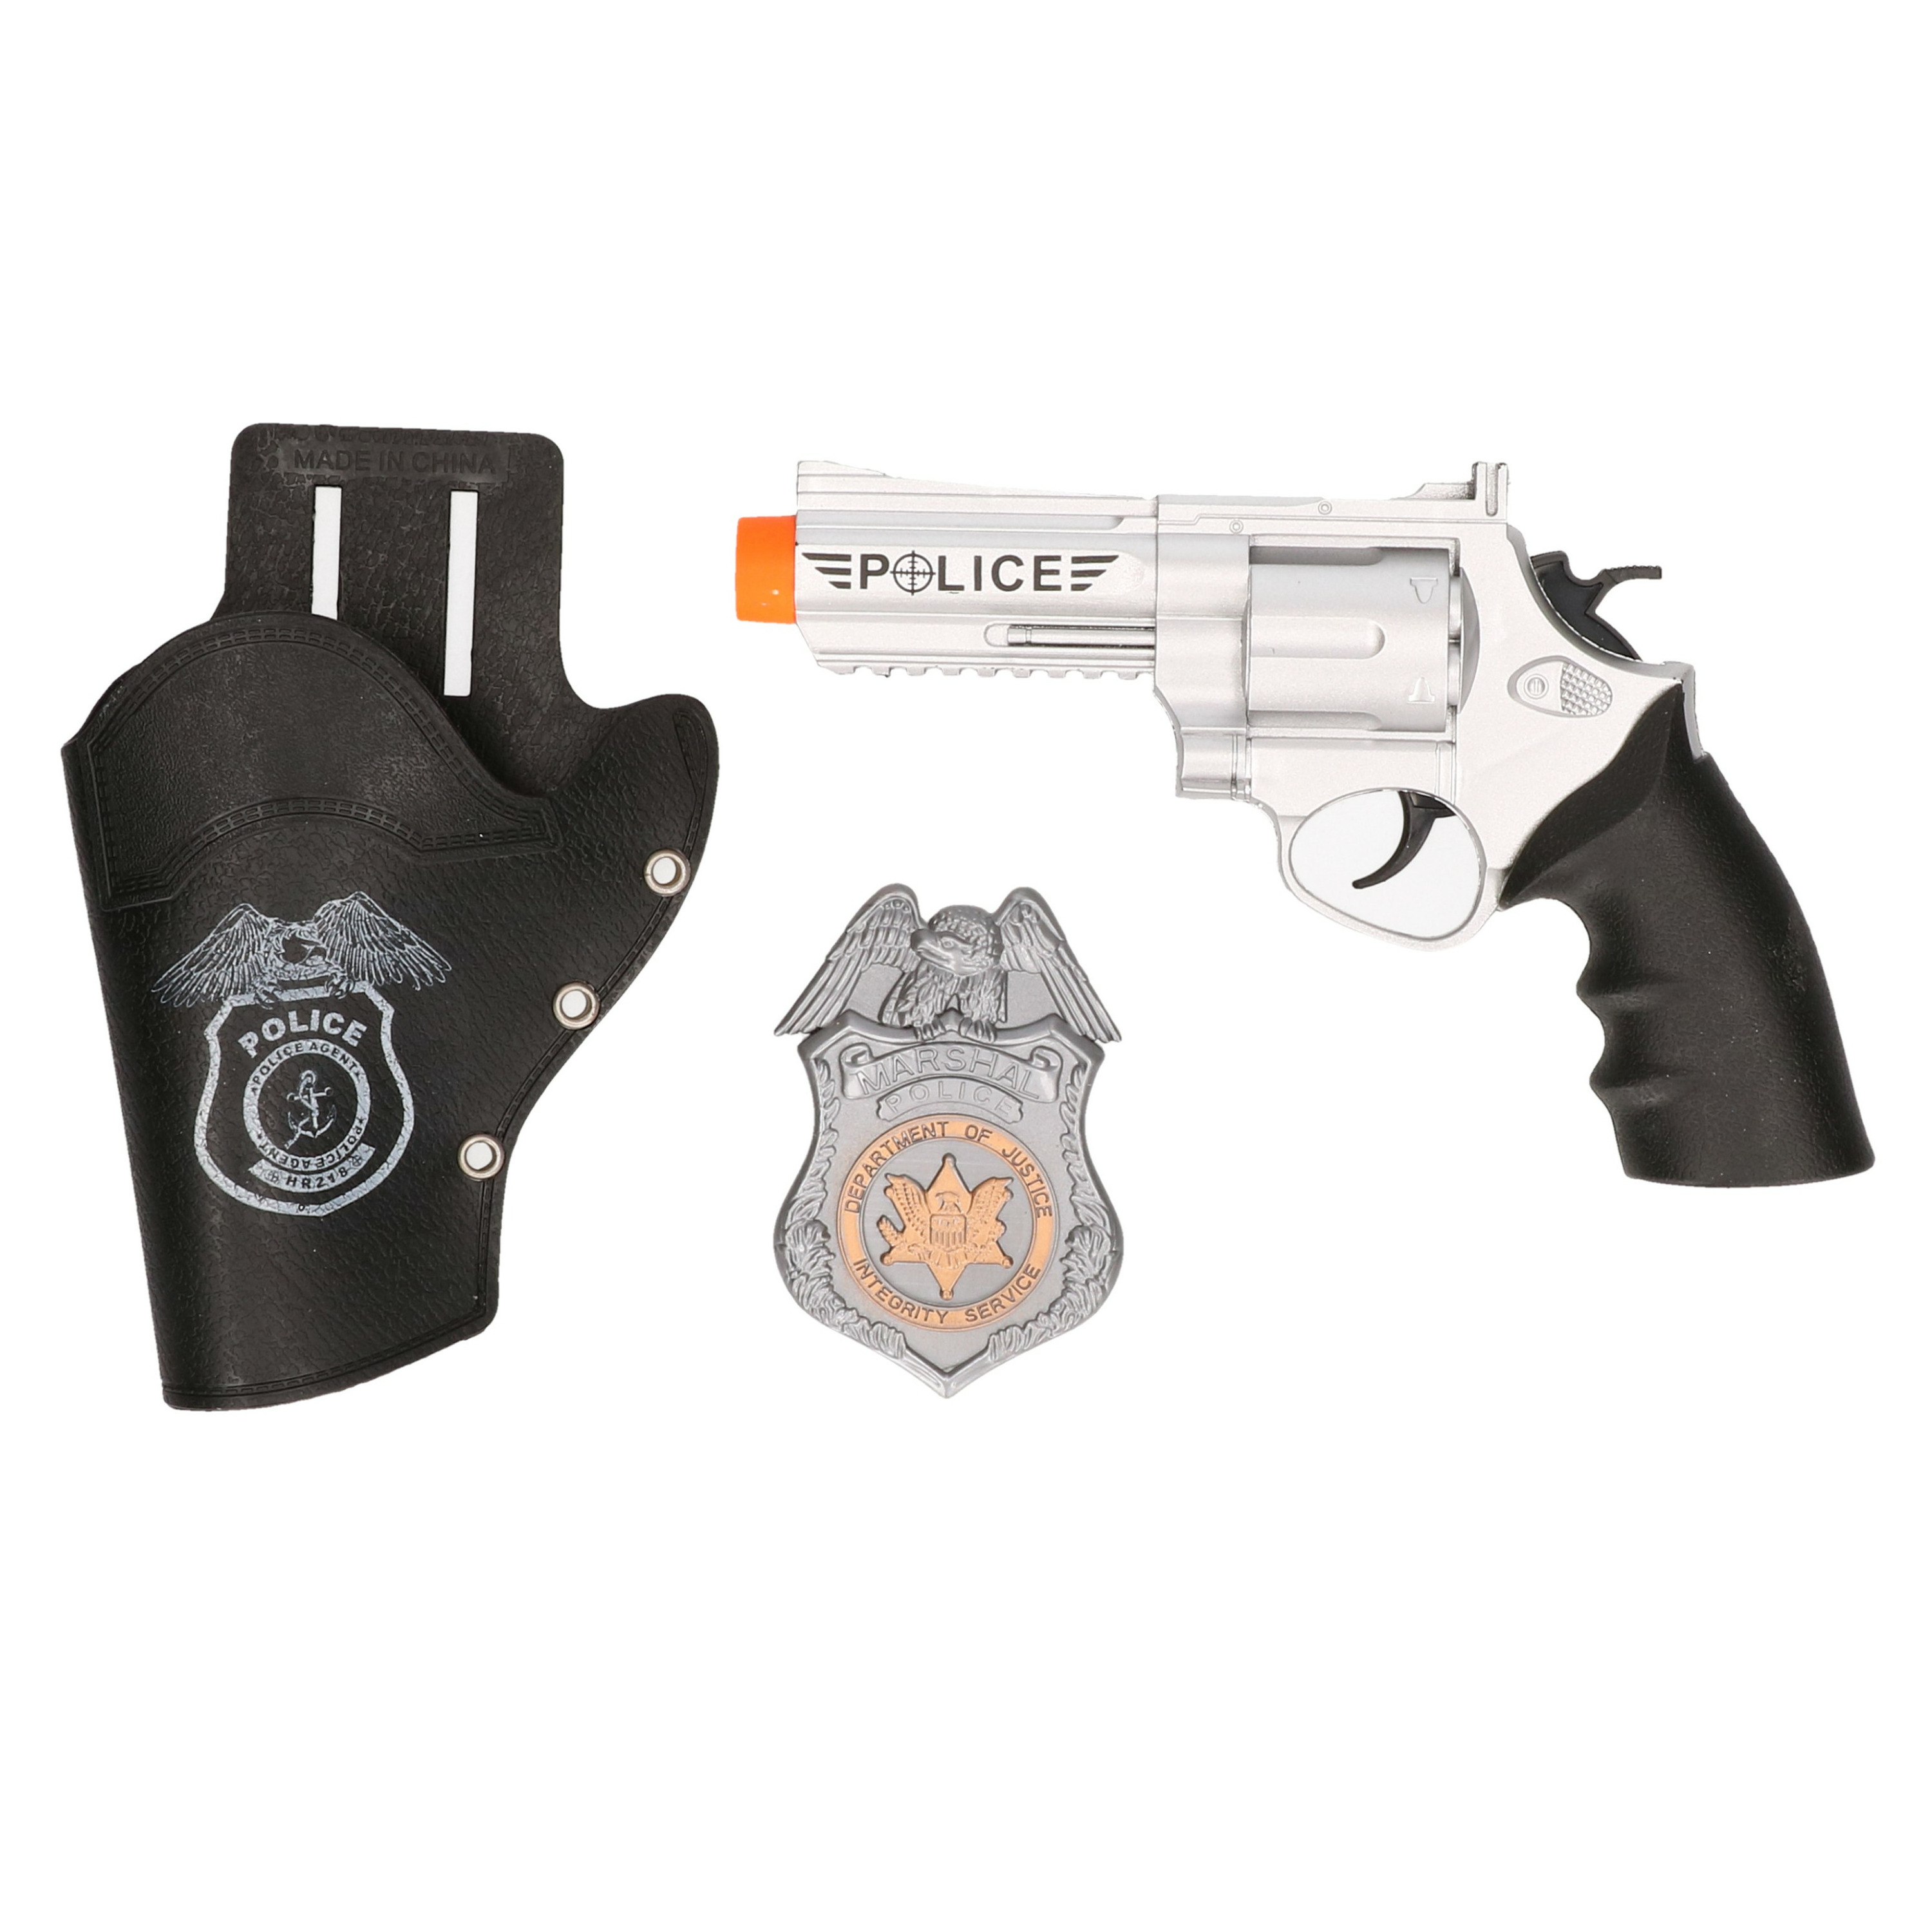 Verkleed speelgoed wapens pistool-holster van kunststof Politie thema